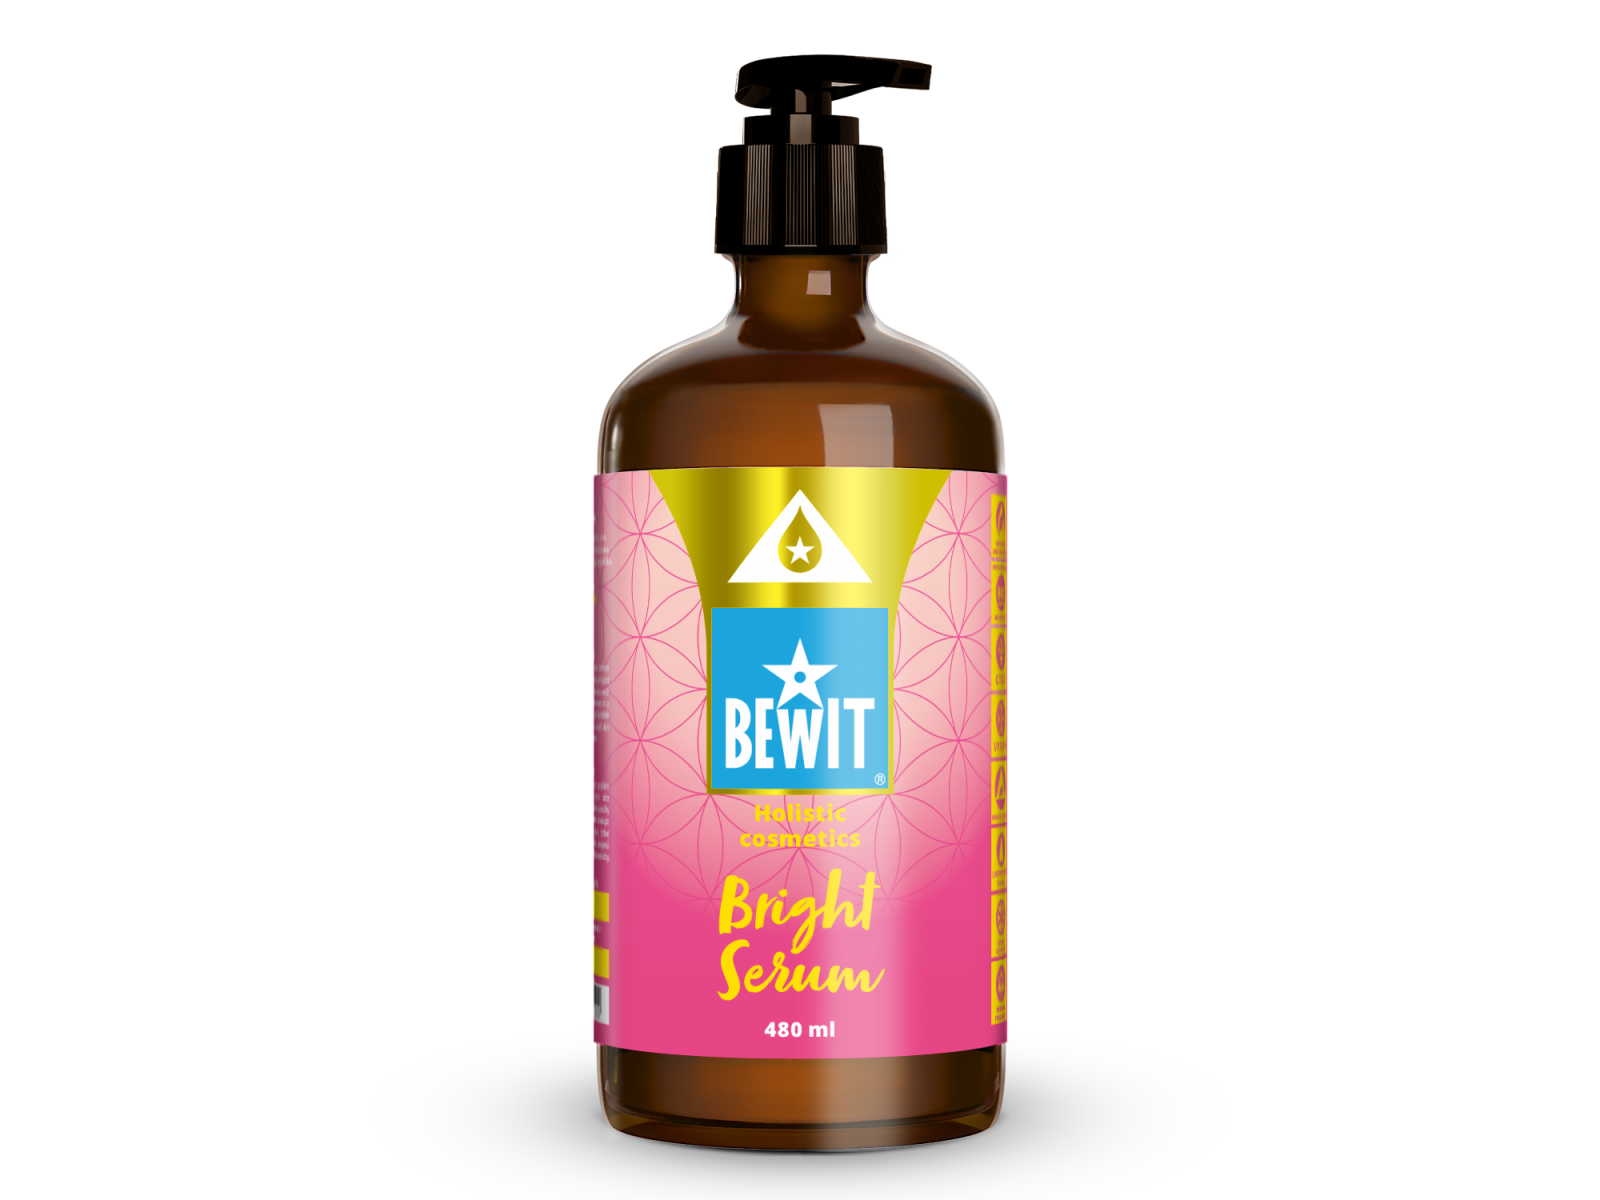 BEWIT BRIGHT SERUM - An exclusive brightening serum - 3